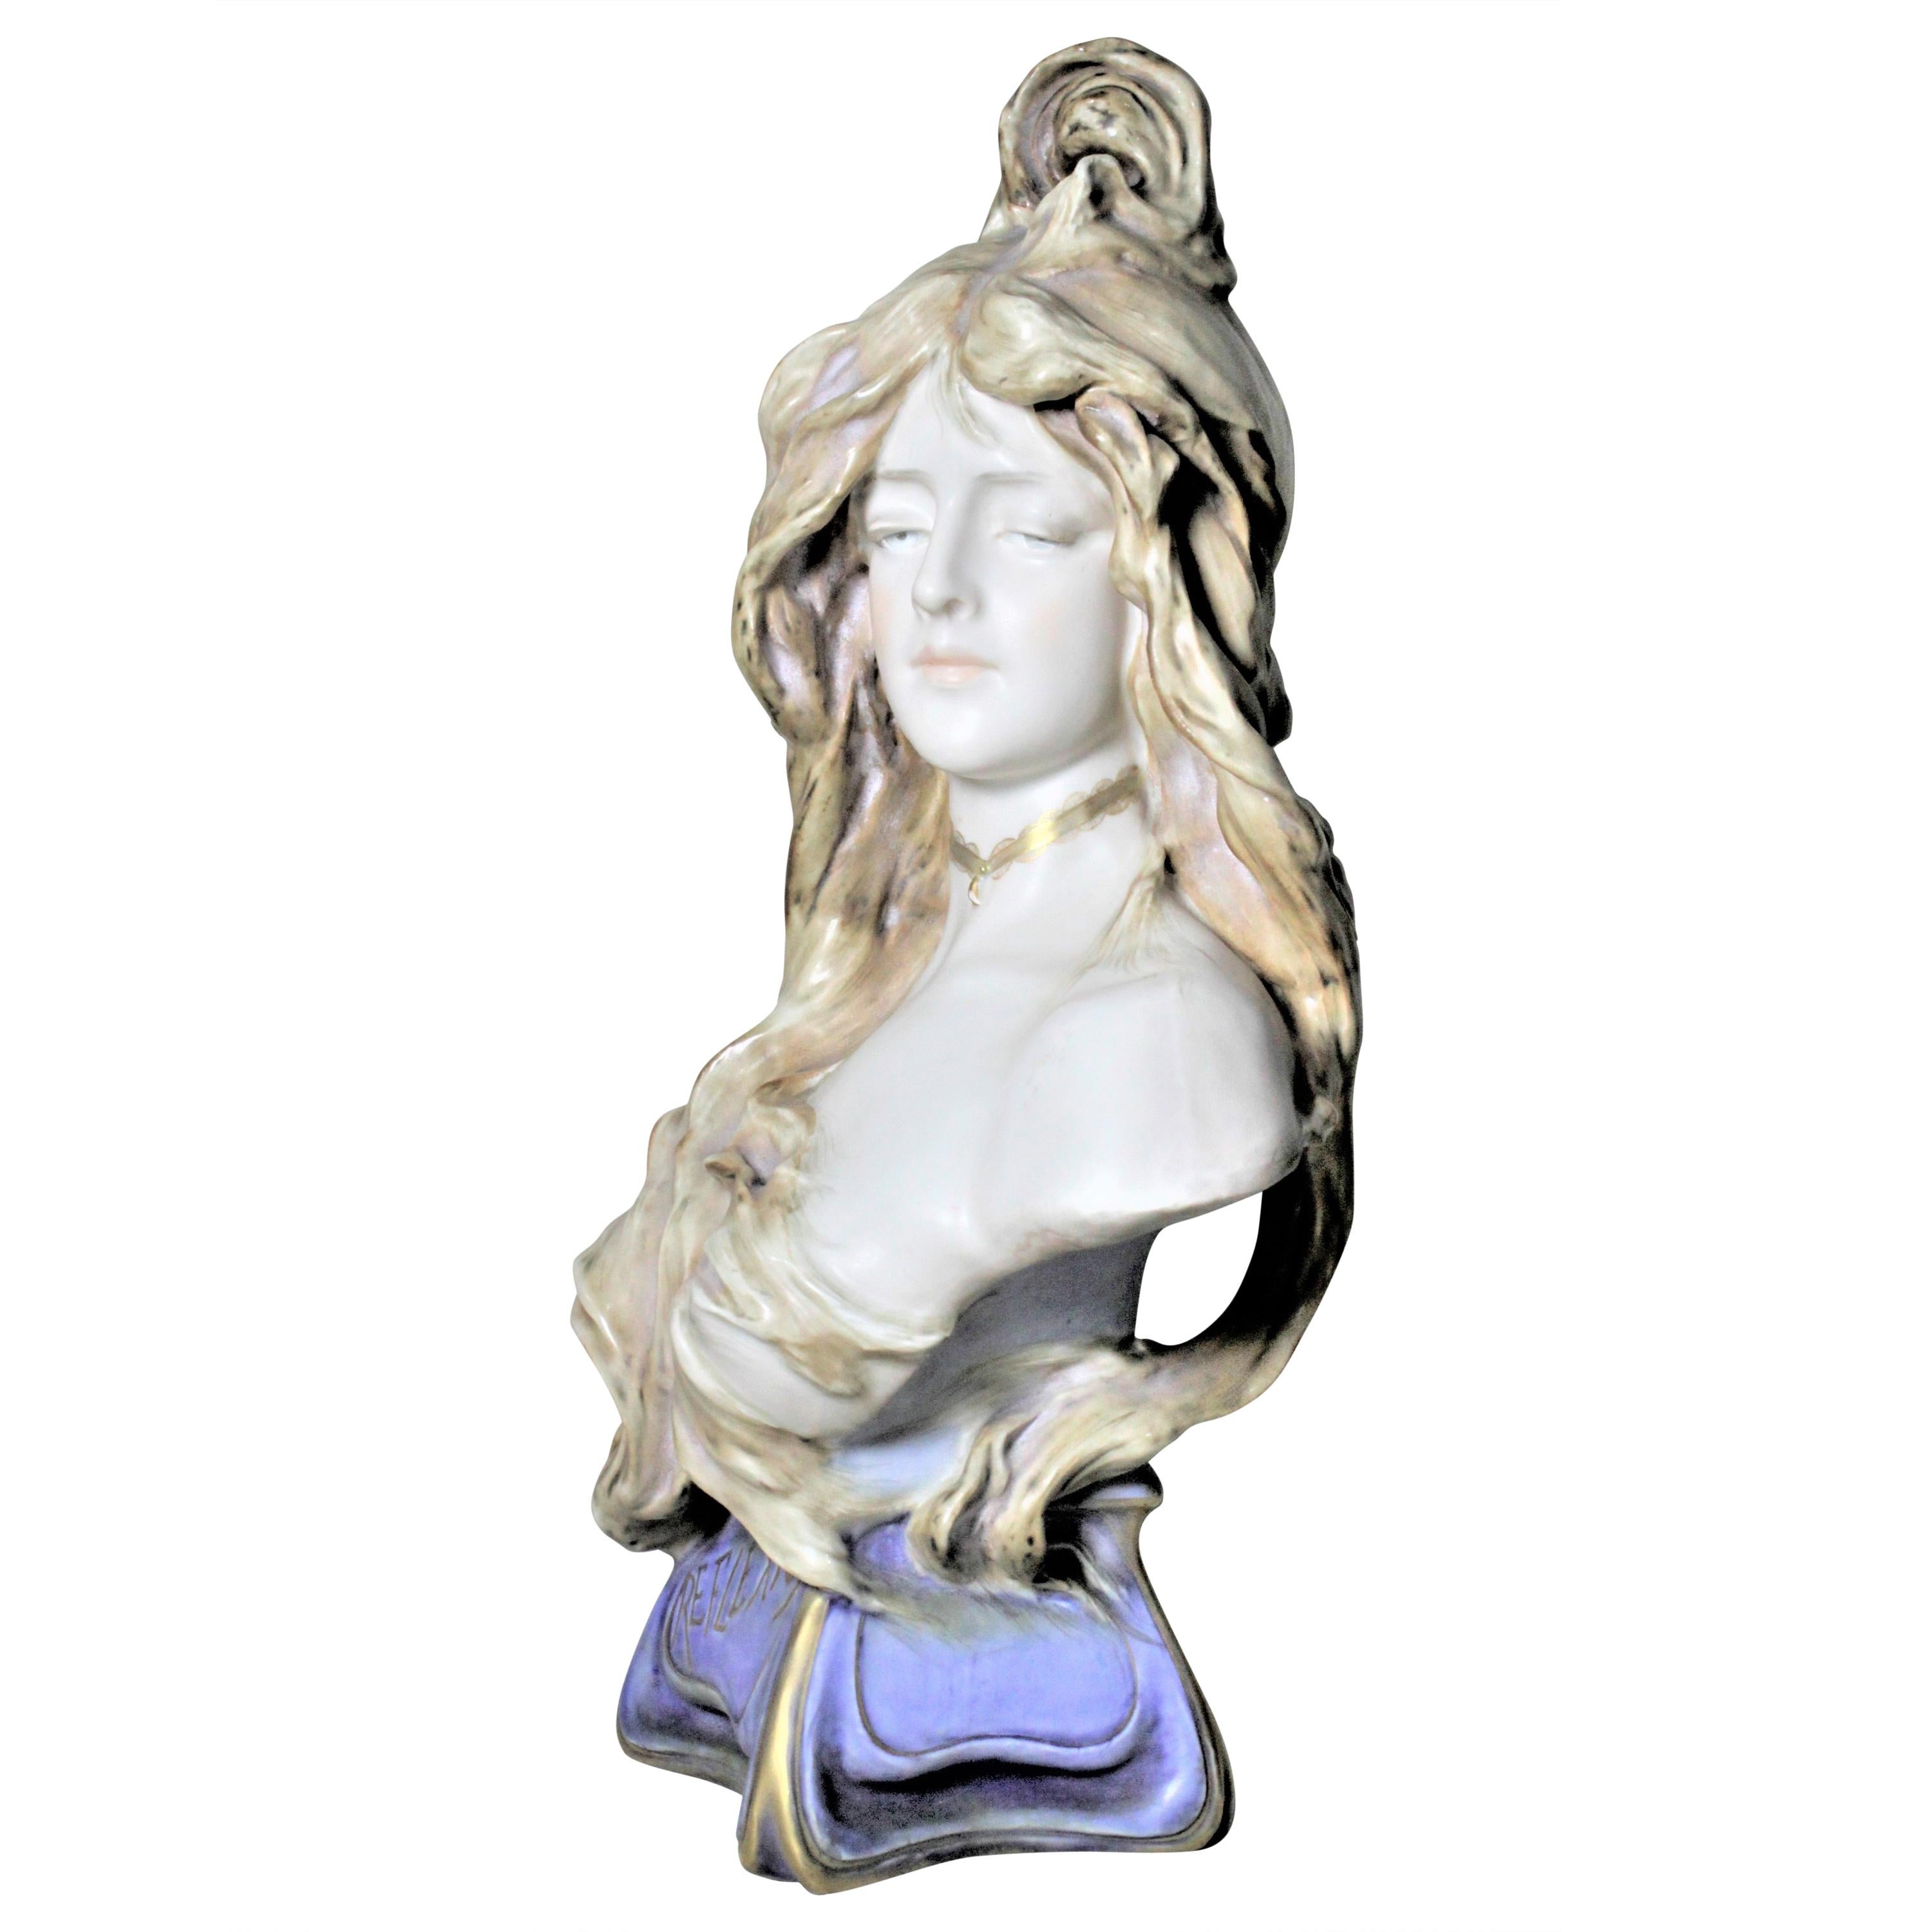 Large Art Nouveau Teplitz Porcelain Female Statue or Bust Entitled "Reflexion"